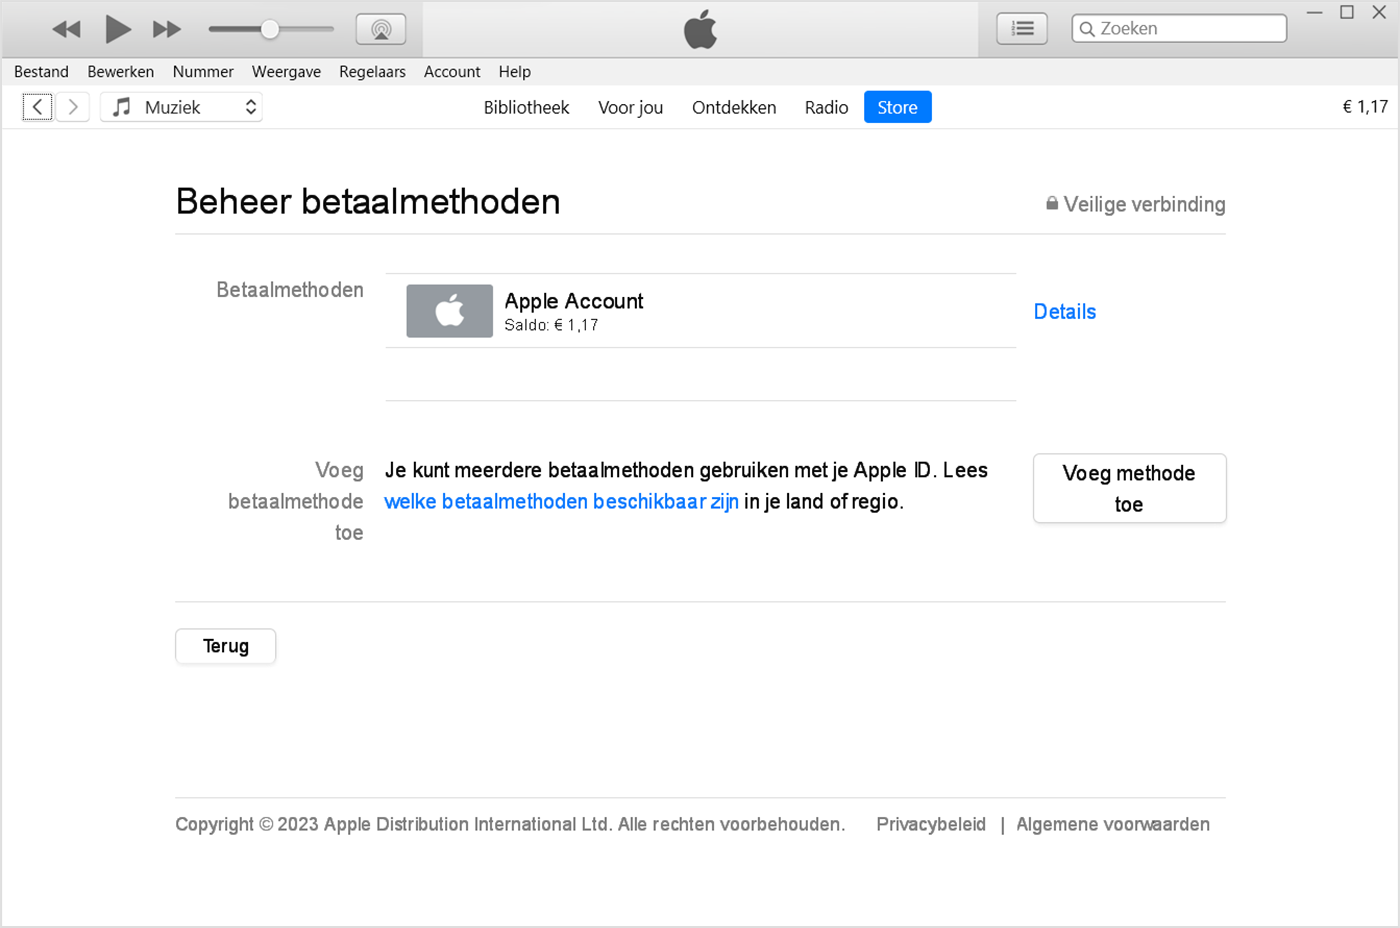 De knop 'Voeg methode toe' wordt in iTunes op een pc weergegeven onder de lijst met betaalmethoden.